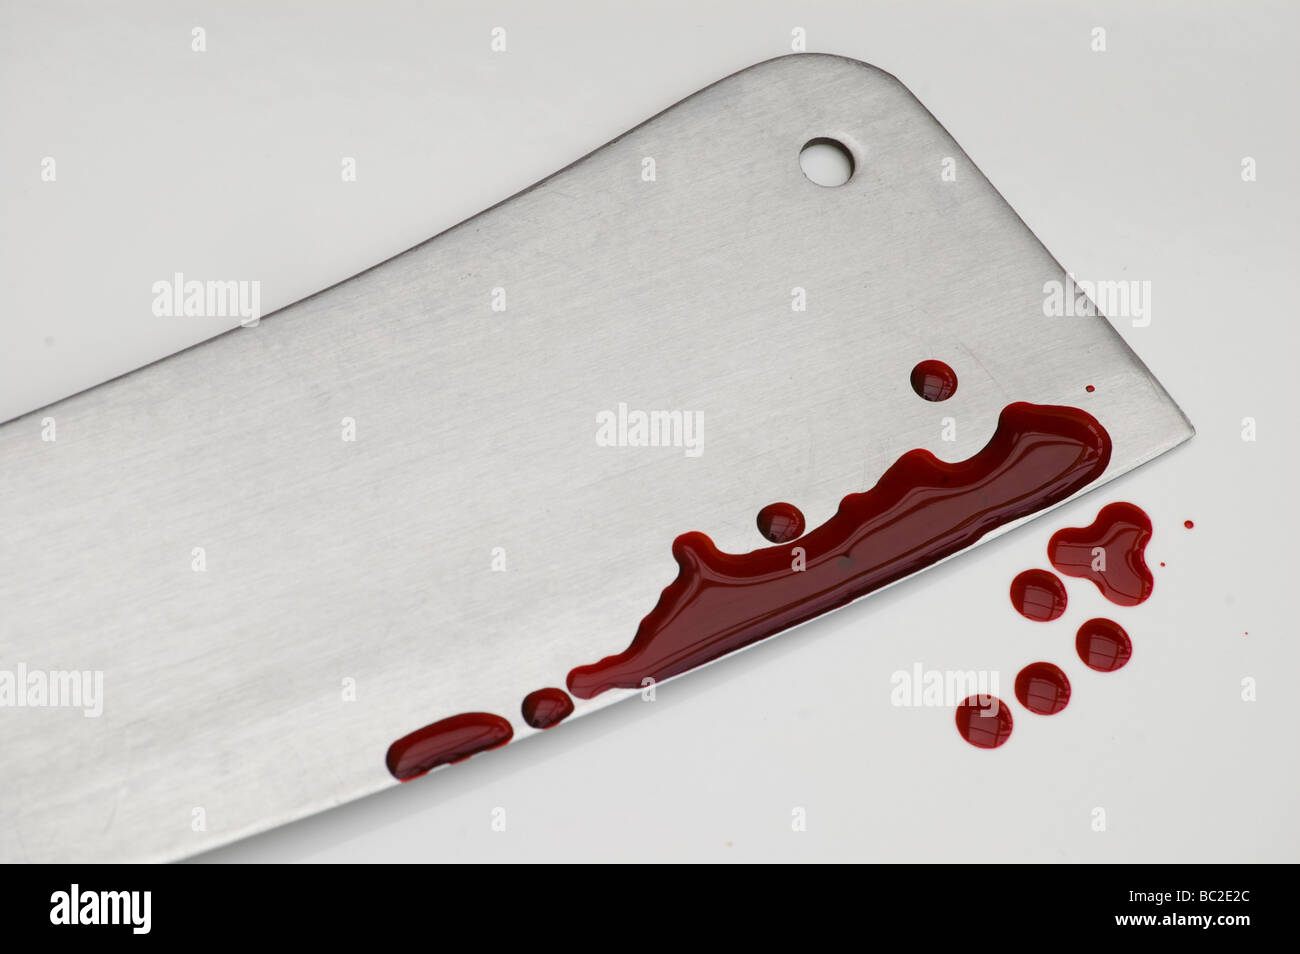 Stark immagine di un taglierino per carne è spruzzato sulle con sangue finto Foto Stock